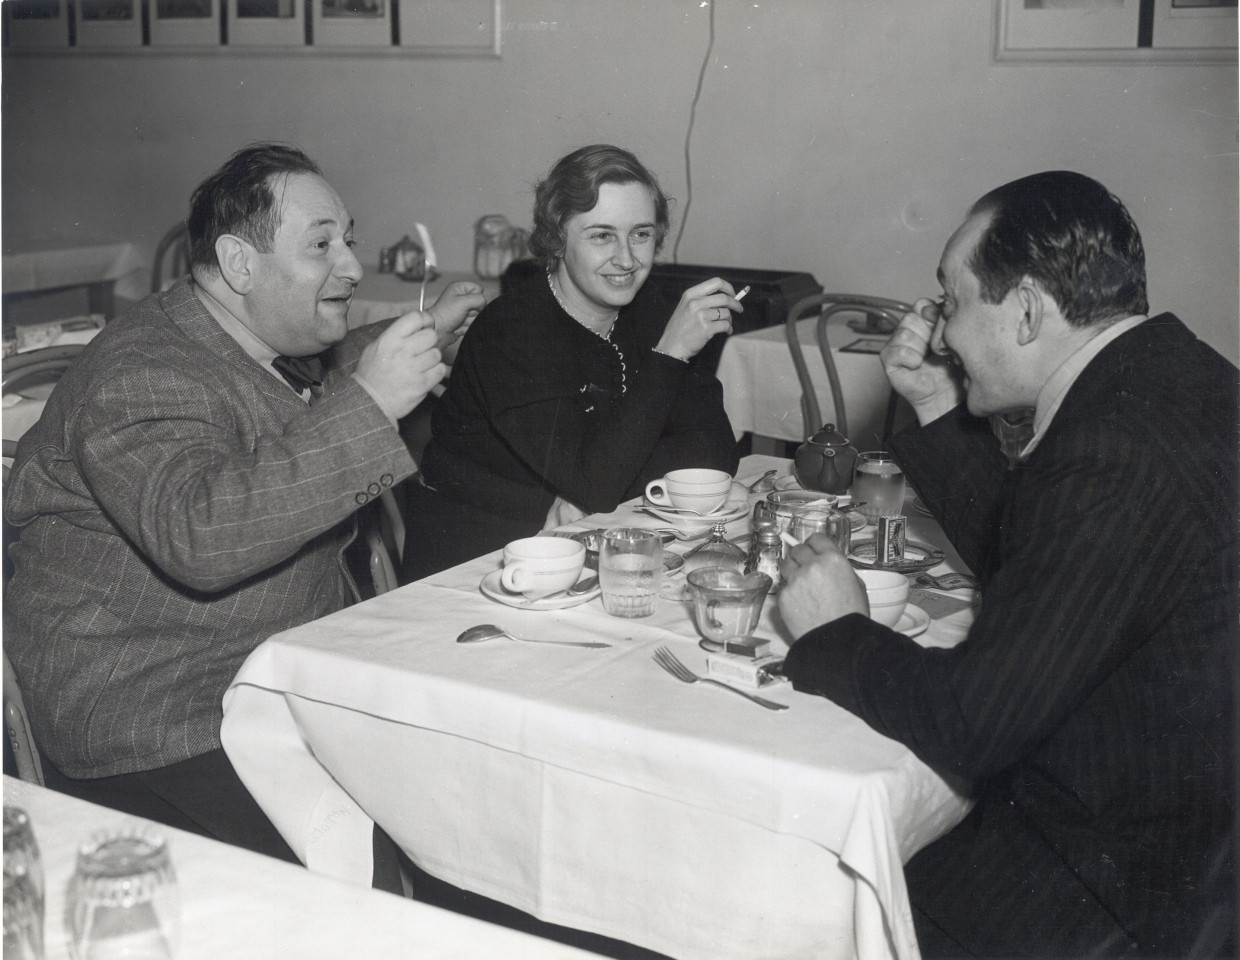 Erich Wolfgang Korngold improvisiert nach einem Mittagessen in der Studiokantine der Warner Brothers ein Stückchen für Stimmgabel solo; sein Publikum sind seine Ehefrau Luzi Korngold, geboren als Luise von Sonnenthal in Wien, und der aus Berlin-Steglitz gebürtige Filmproduzent Henry Blanke.